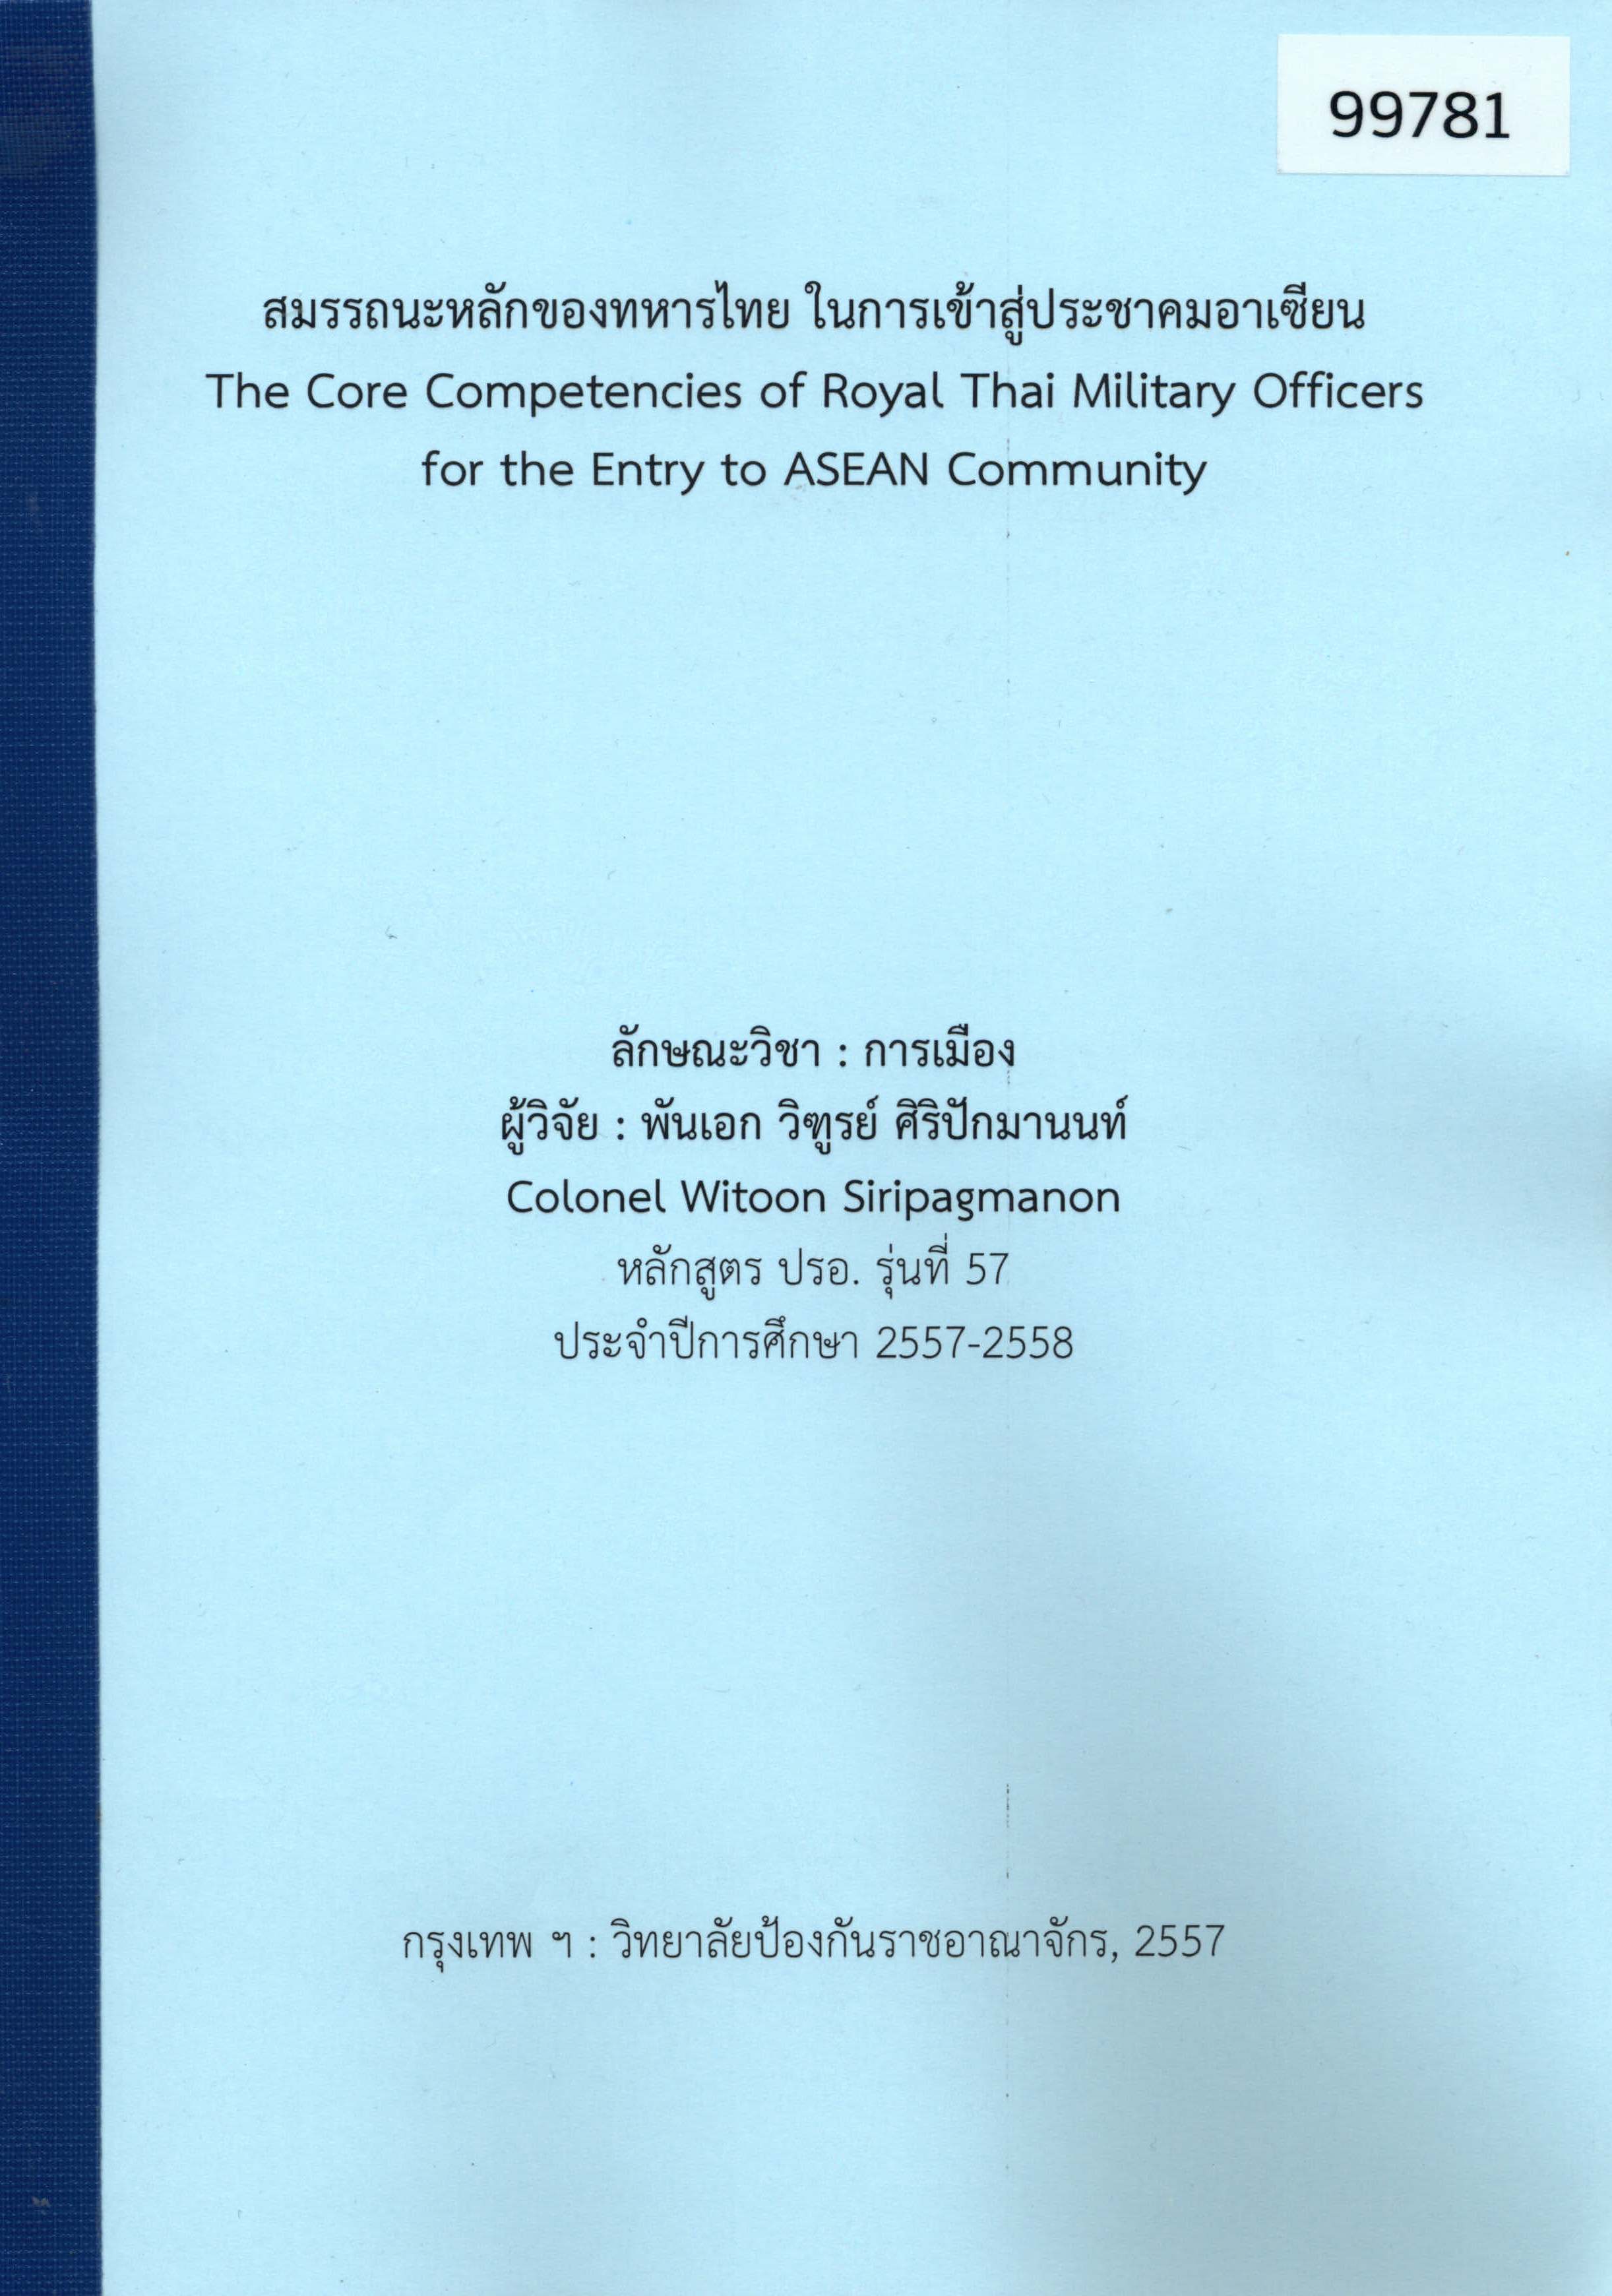 การพัฒนาระบบการส่งกำลังบำรุงร่วมของกองทัพไทยกับการเข้าสู่ประชาคมอาเซียน